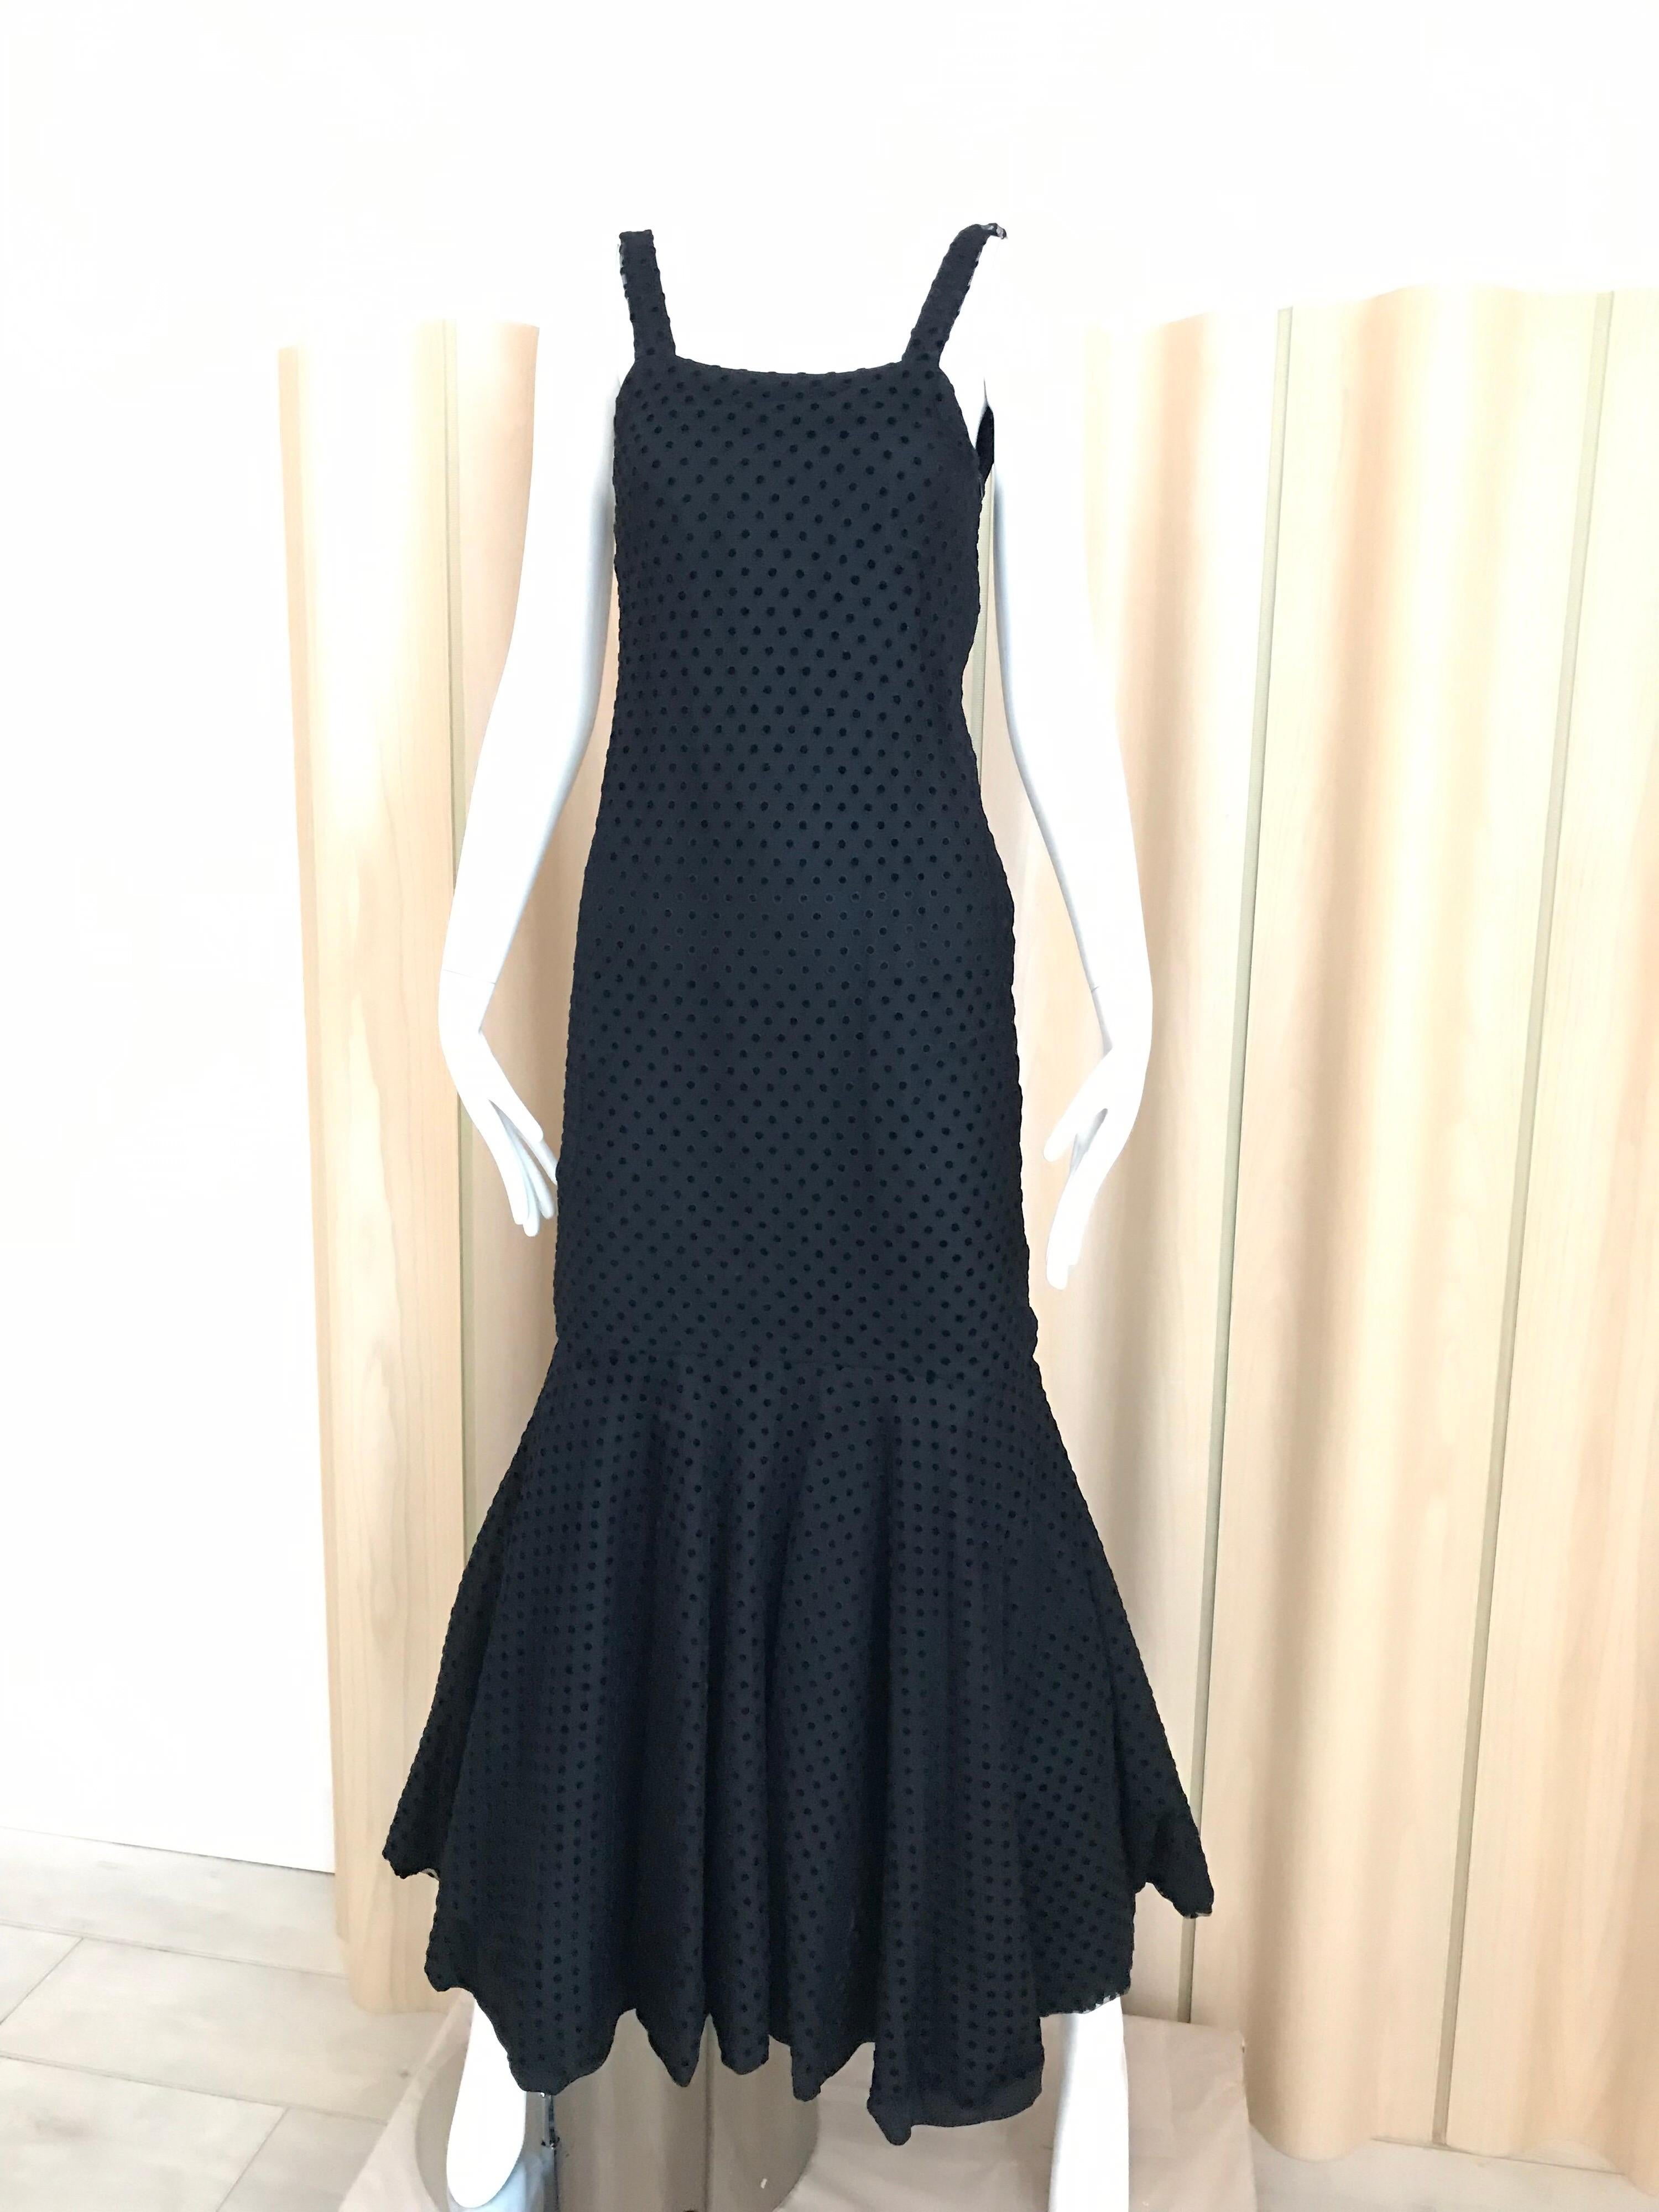 Christian Dior Black Net Dress with Velvet Dot Dress 8